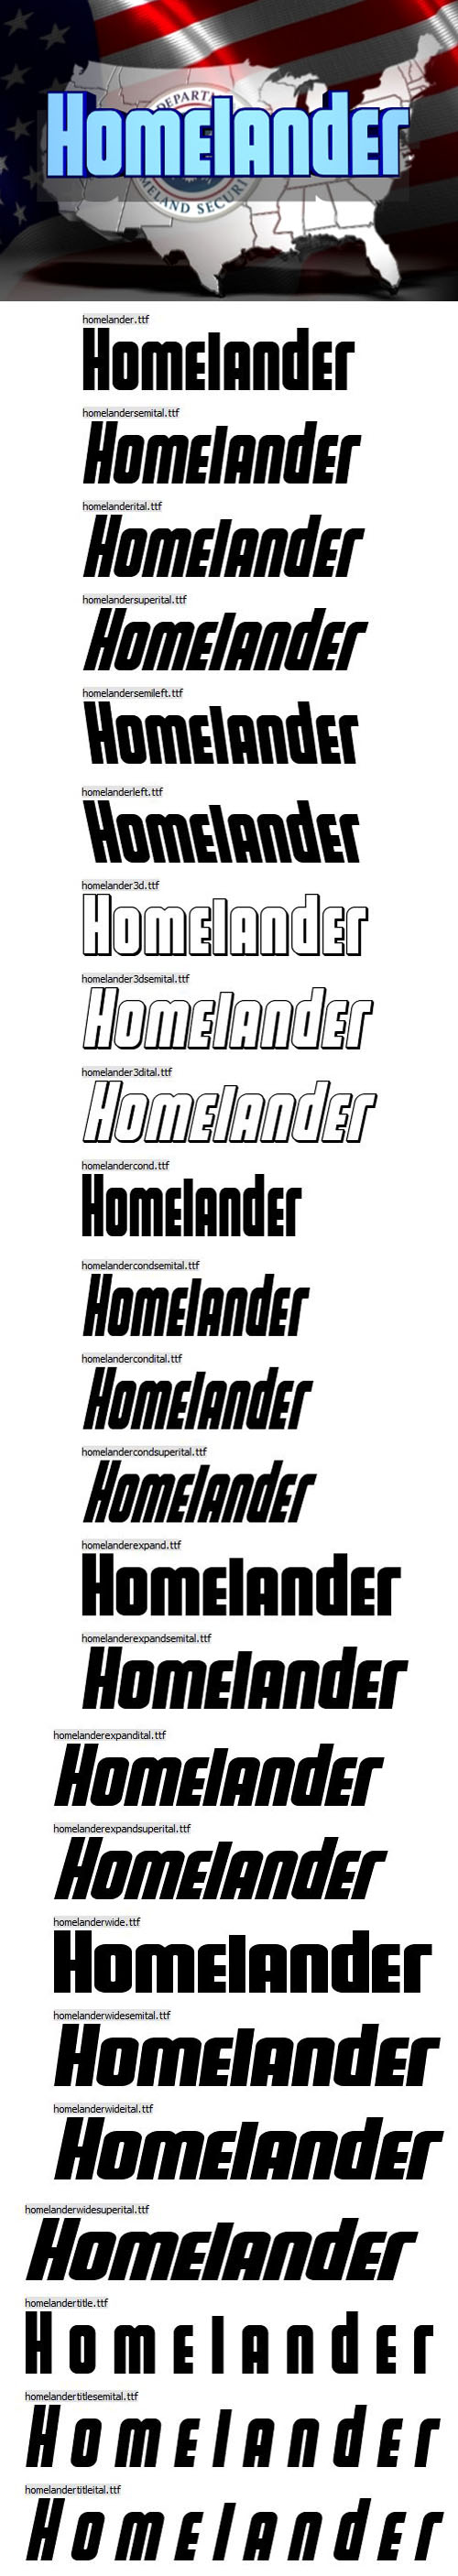 Homelander Font [24-Weights]